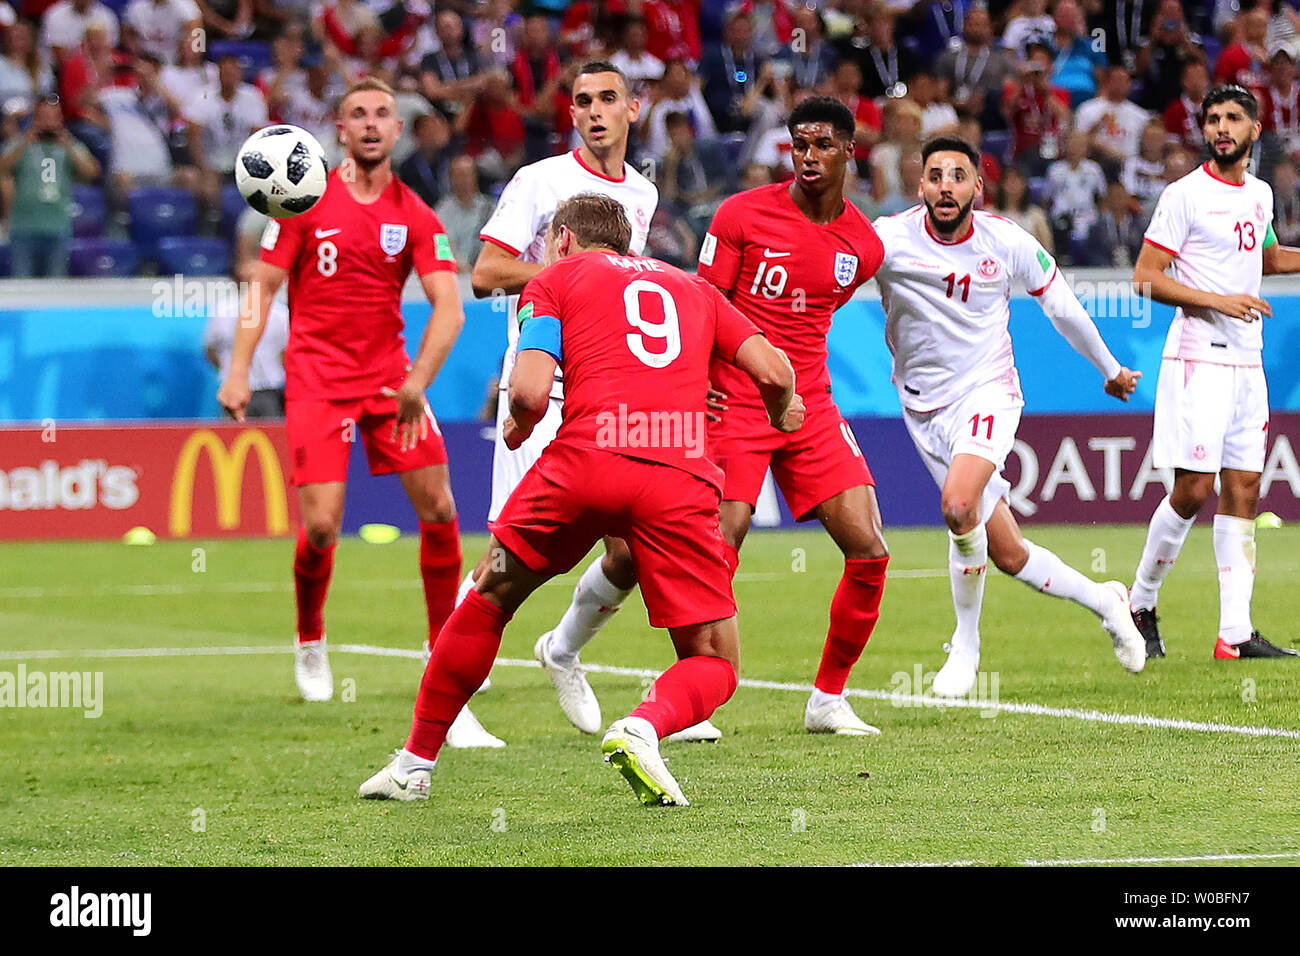 Harry Kane, de l'Angleterre marque son deuxième but de la partie au cours de la Coupe du Monde FIFA 2018 match du groupe G à l'Arena de Volgograd Volgograd, Russie le 18 juin 2018. Photo de Chris Brunskill/UPI Banque D'Images